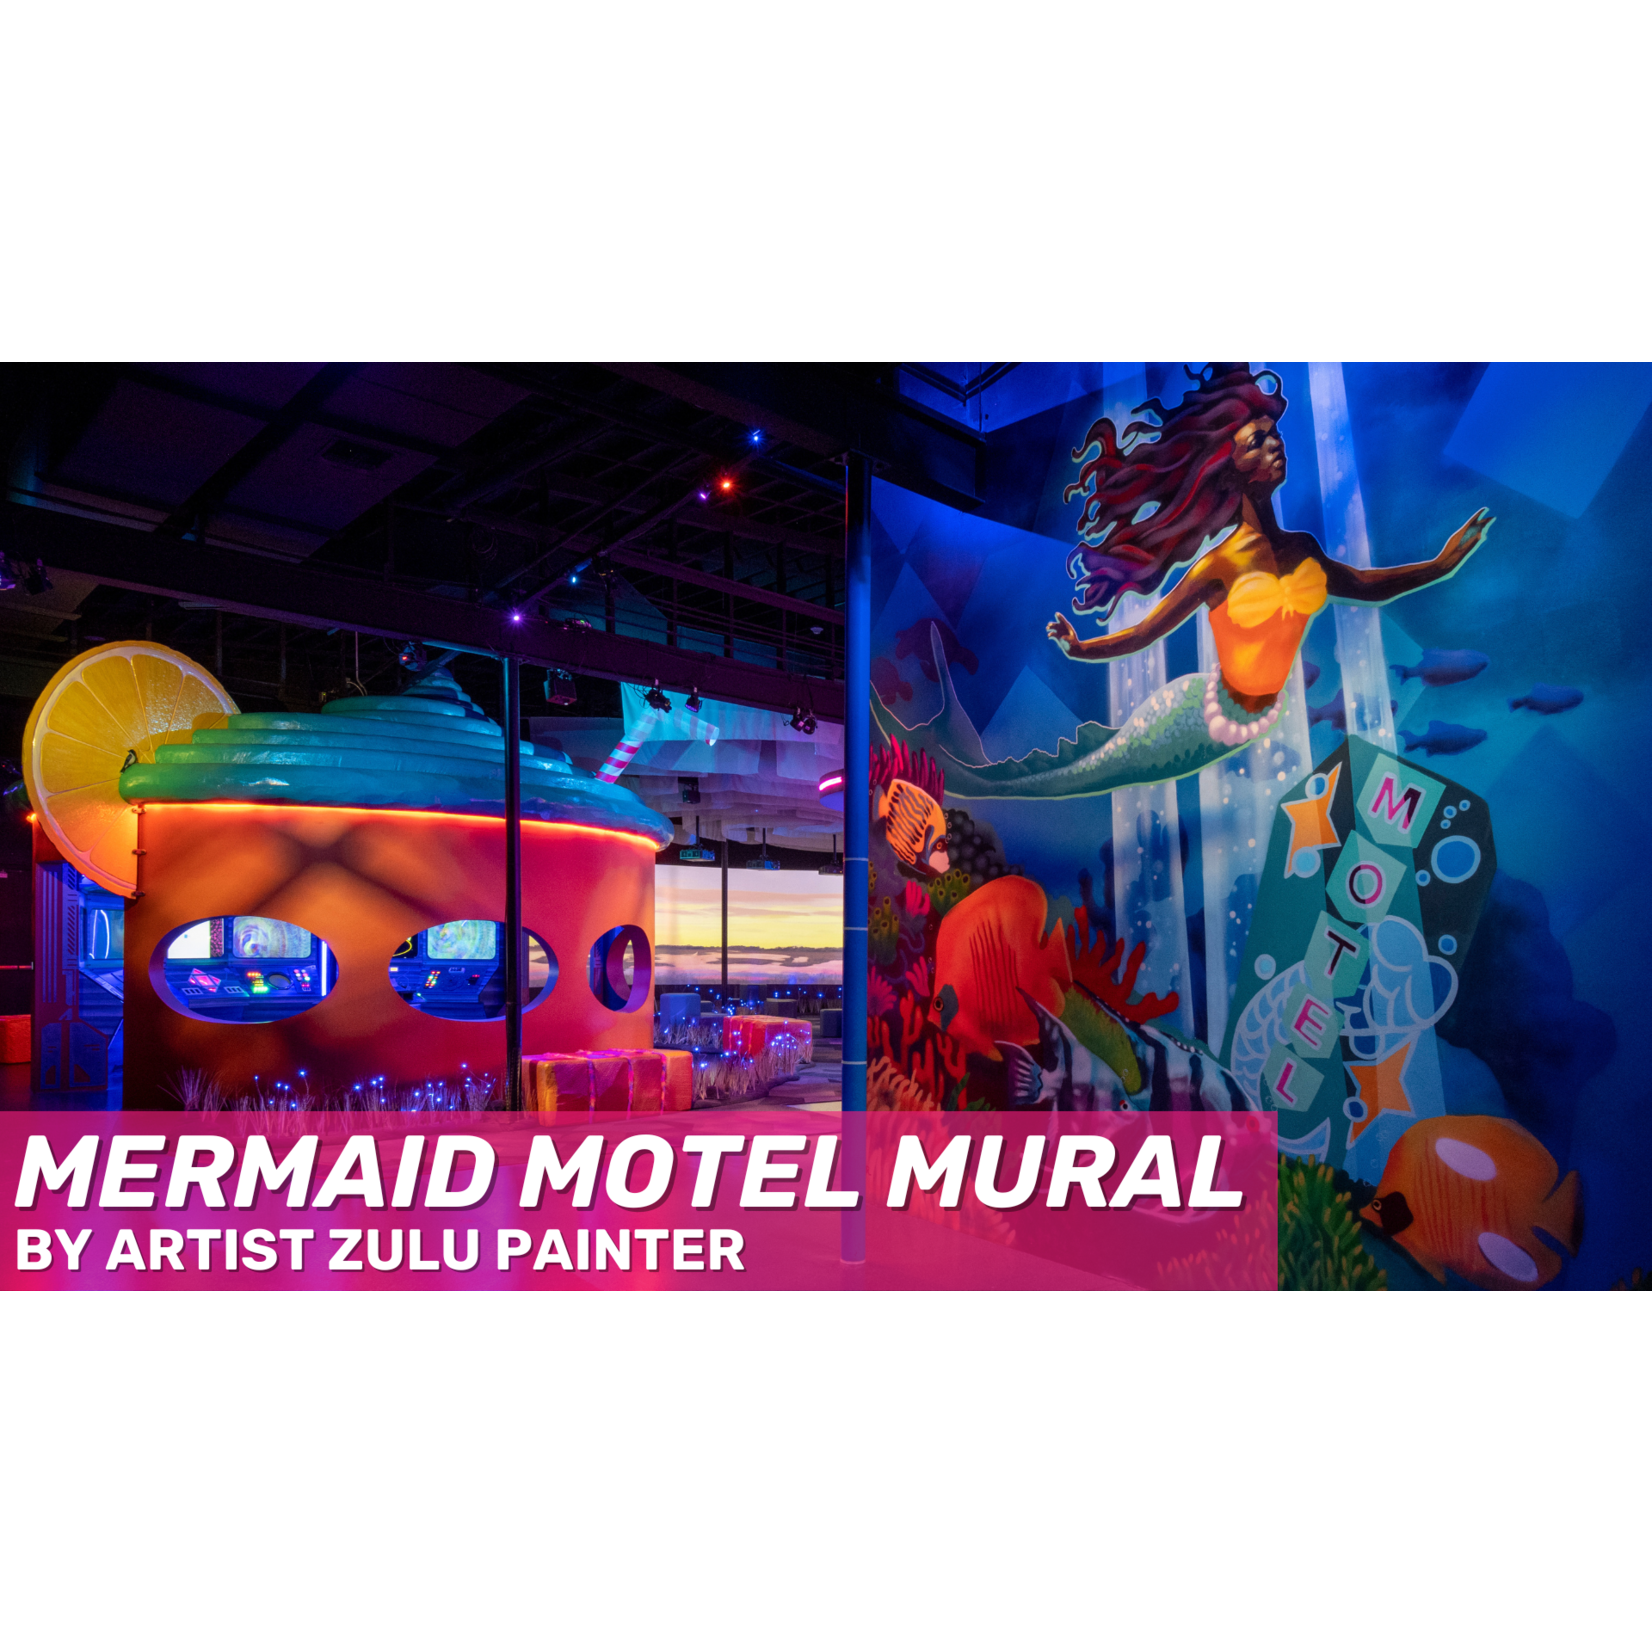 Zulu Painter Zulu Painter's "Mermaid Motel" Mural 14" x 11" Art Print